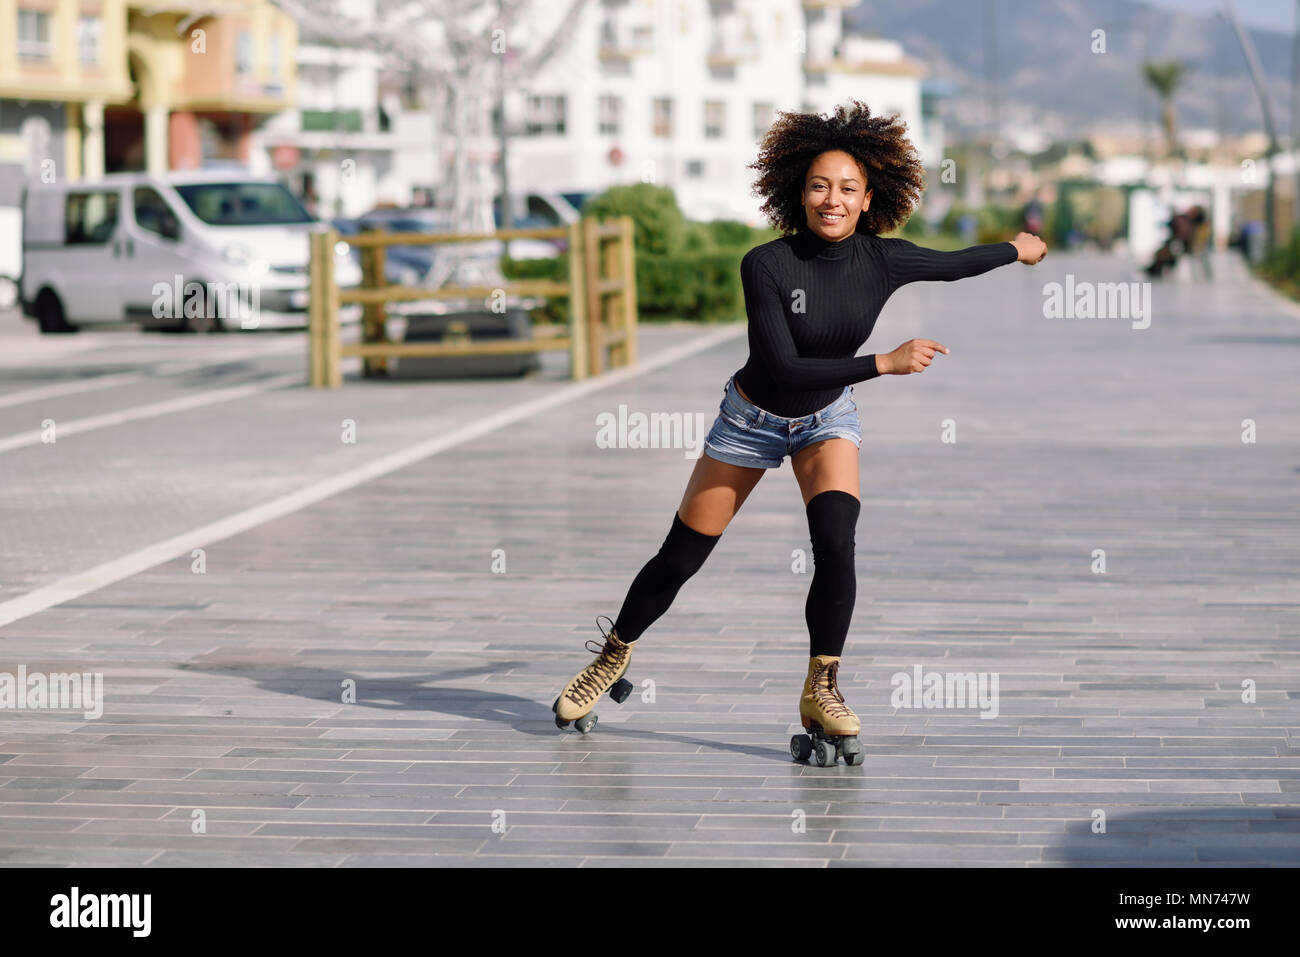 Junge passen schwarze Frau auf Rollschuhen reiten im Freien auf Urban Street. Lächelnde Mädchen mit Afro Frisur rollerblading an einem sonnigen Tag Stockfoto